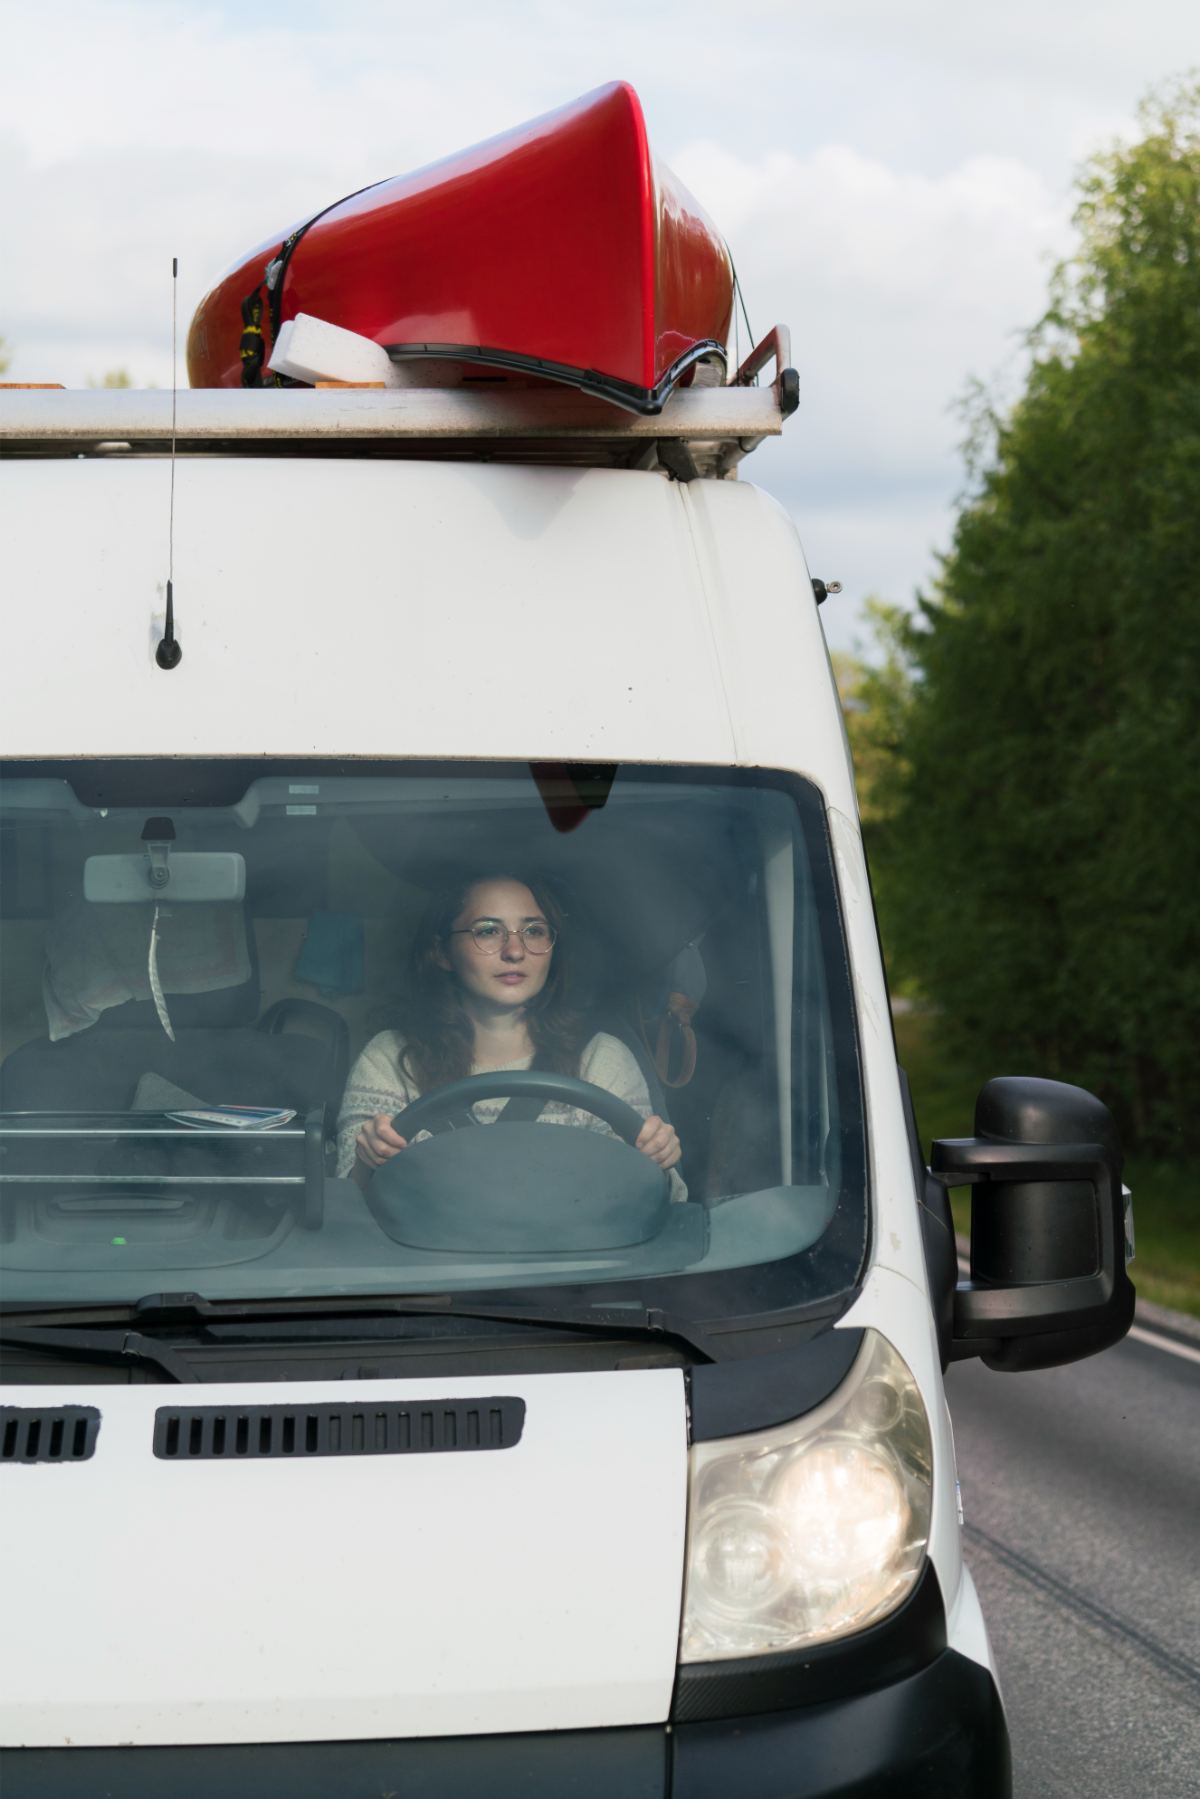 Woman driving a camper van